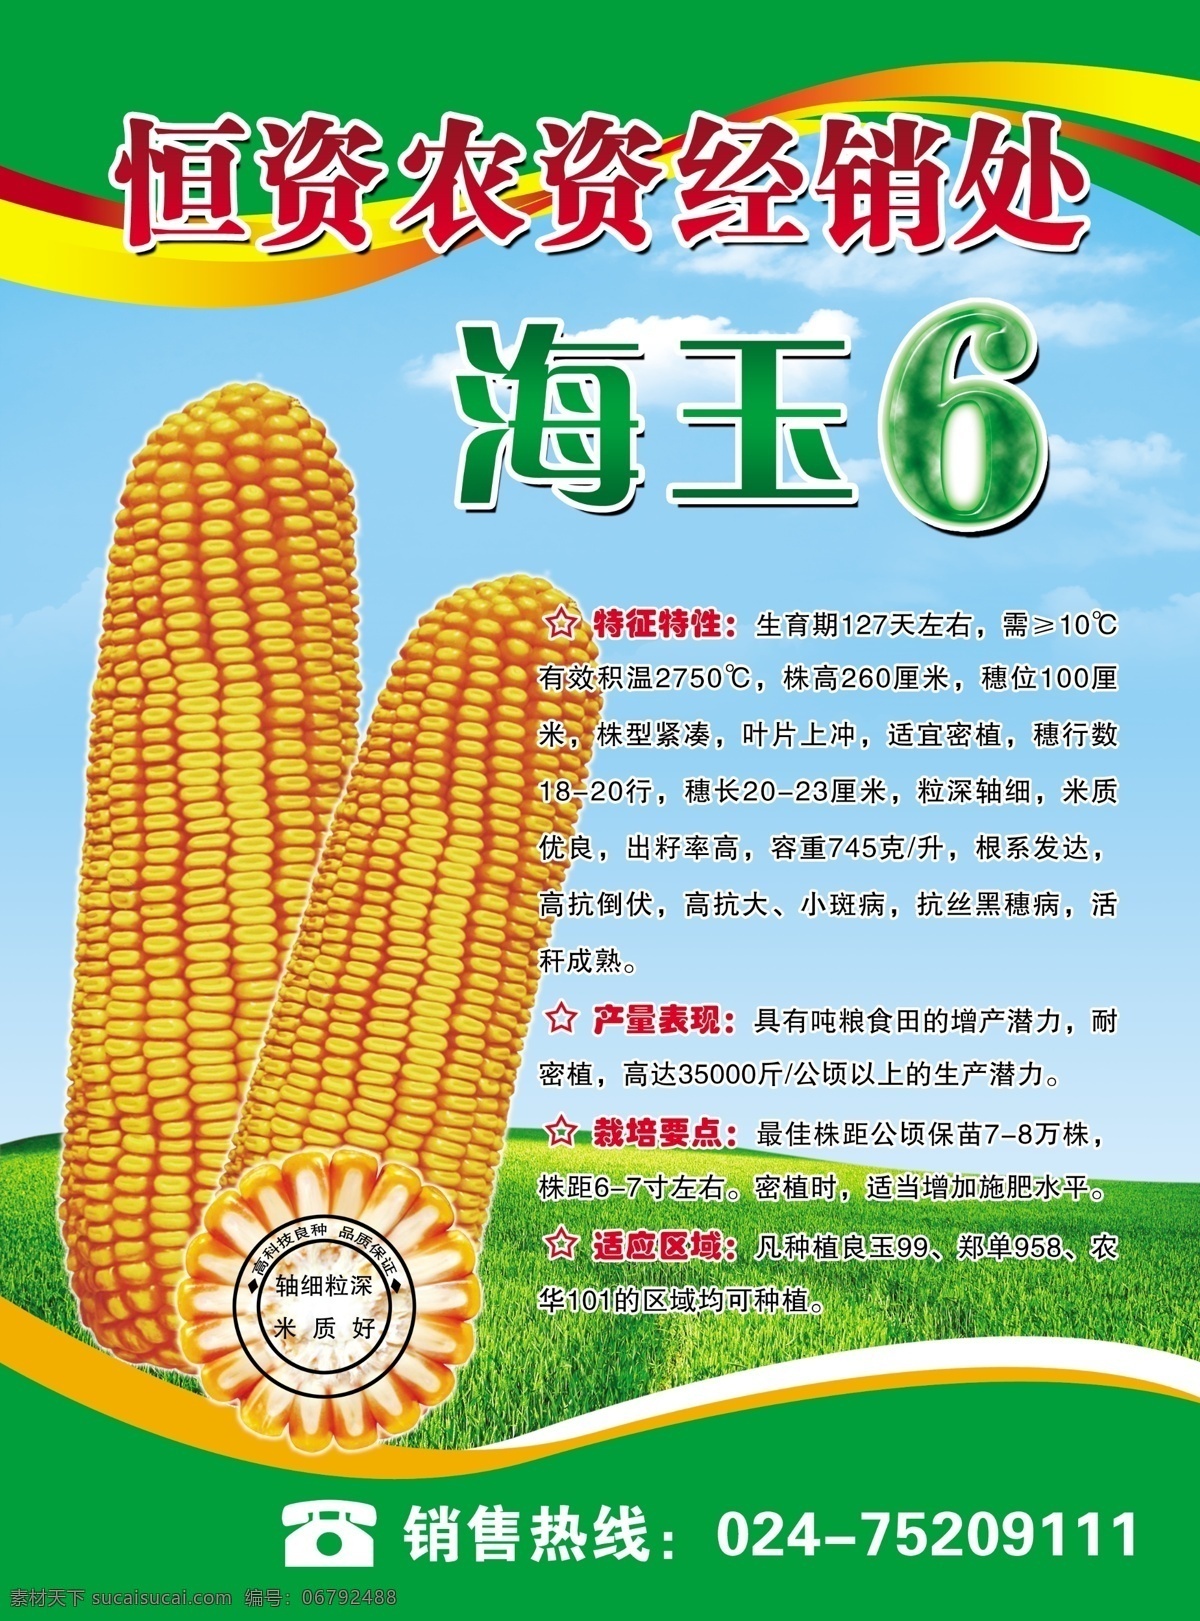 玉米种业海报 玉米种 玉米 种子 耐热 结实 早熟 高产 籽粒 种业 海玉6 玉米种海报